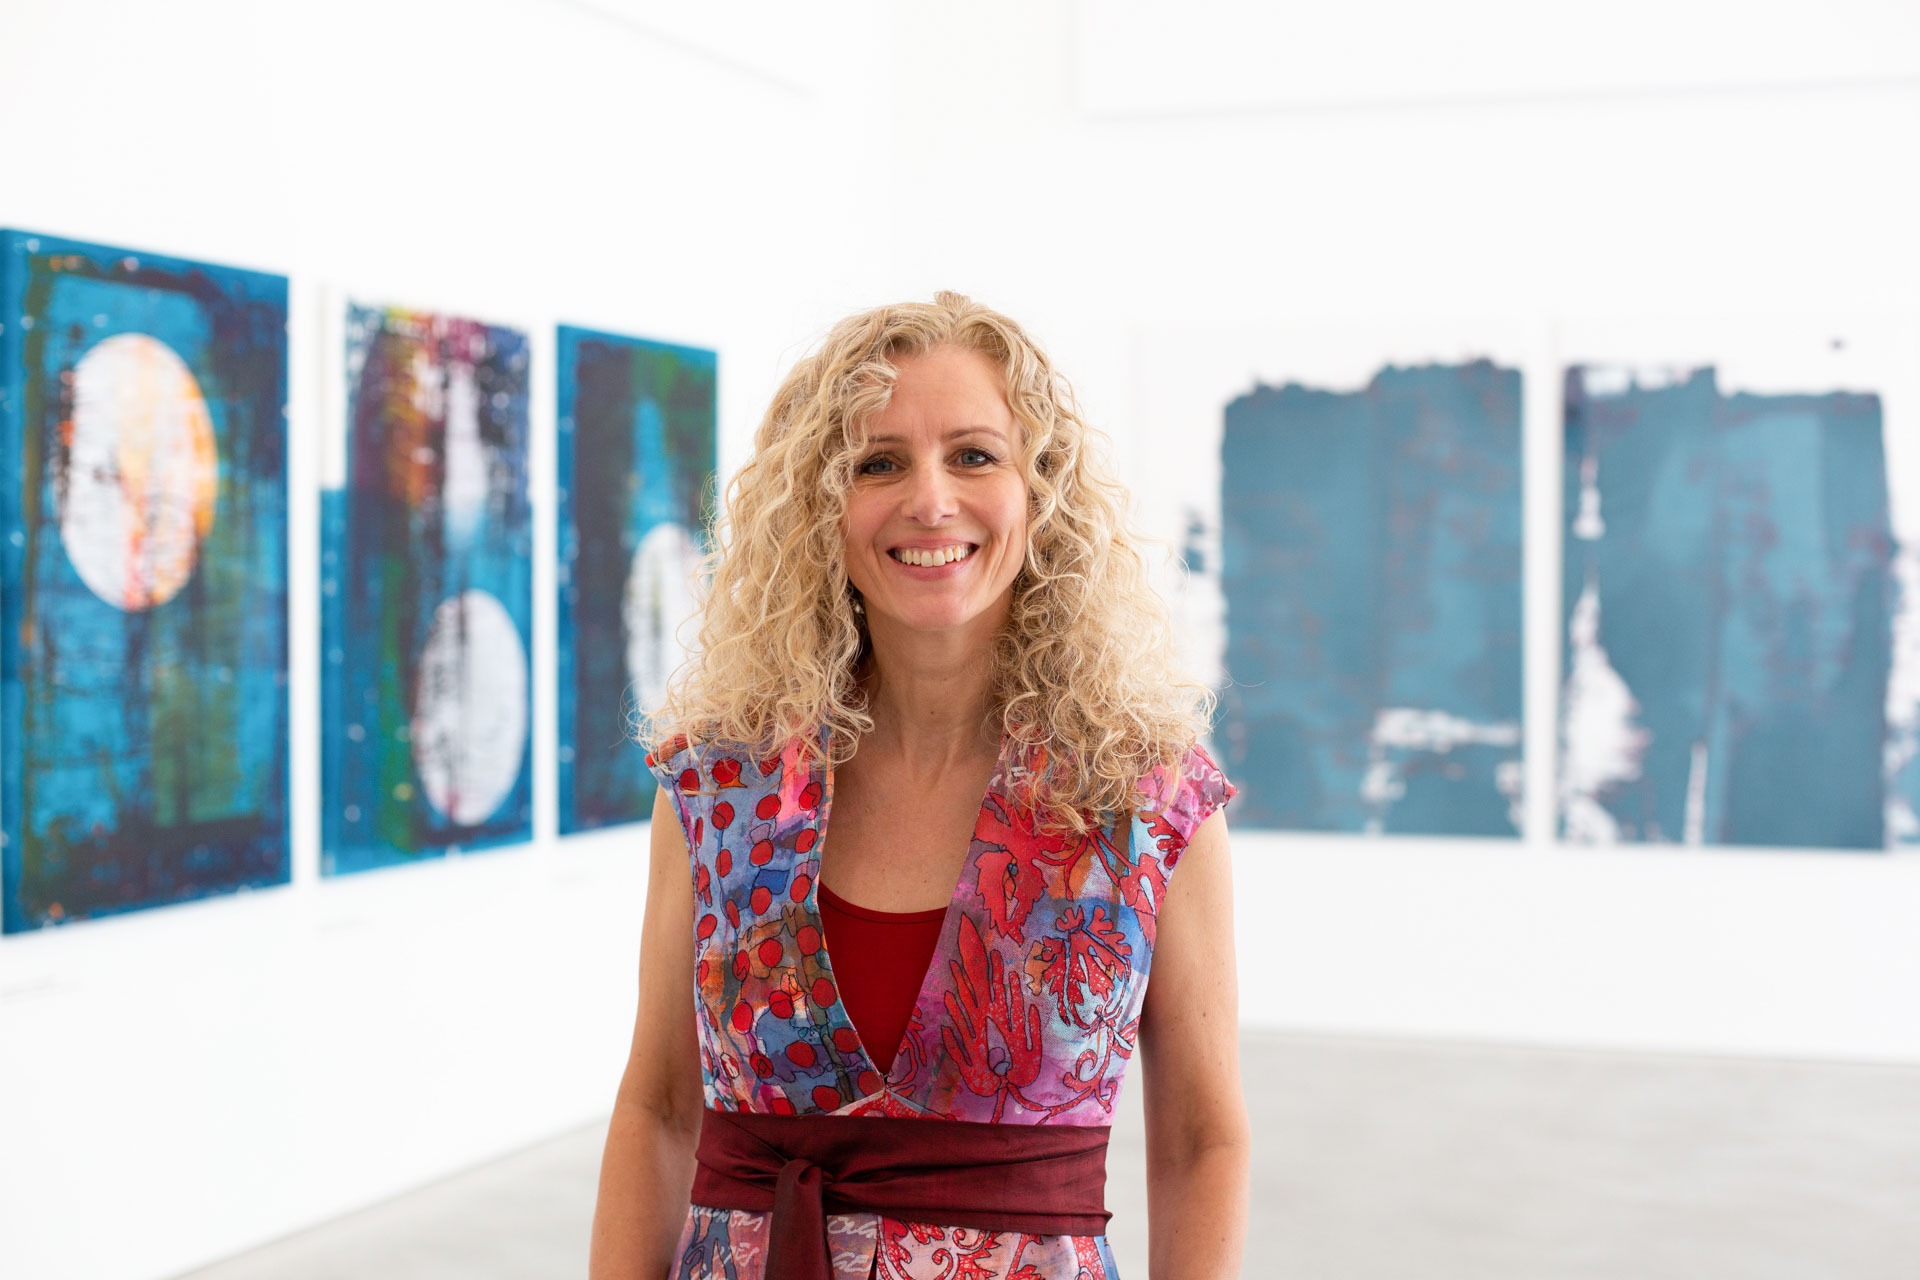 Künstlerinnengespräch mit Evelyn Grill zur Ausstellung "Weltbilder"